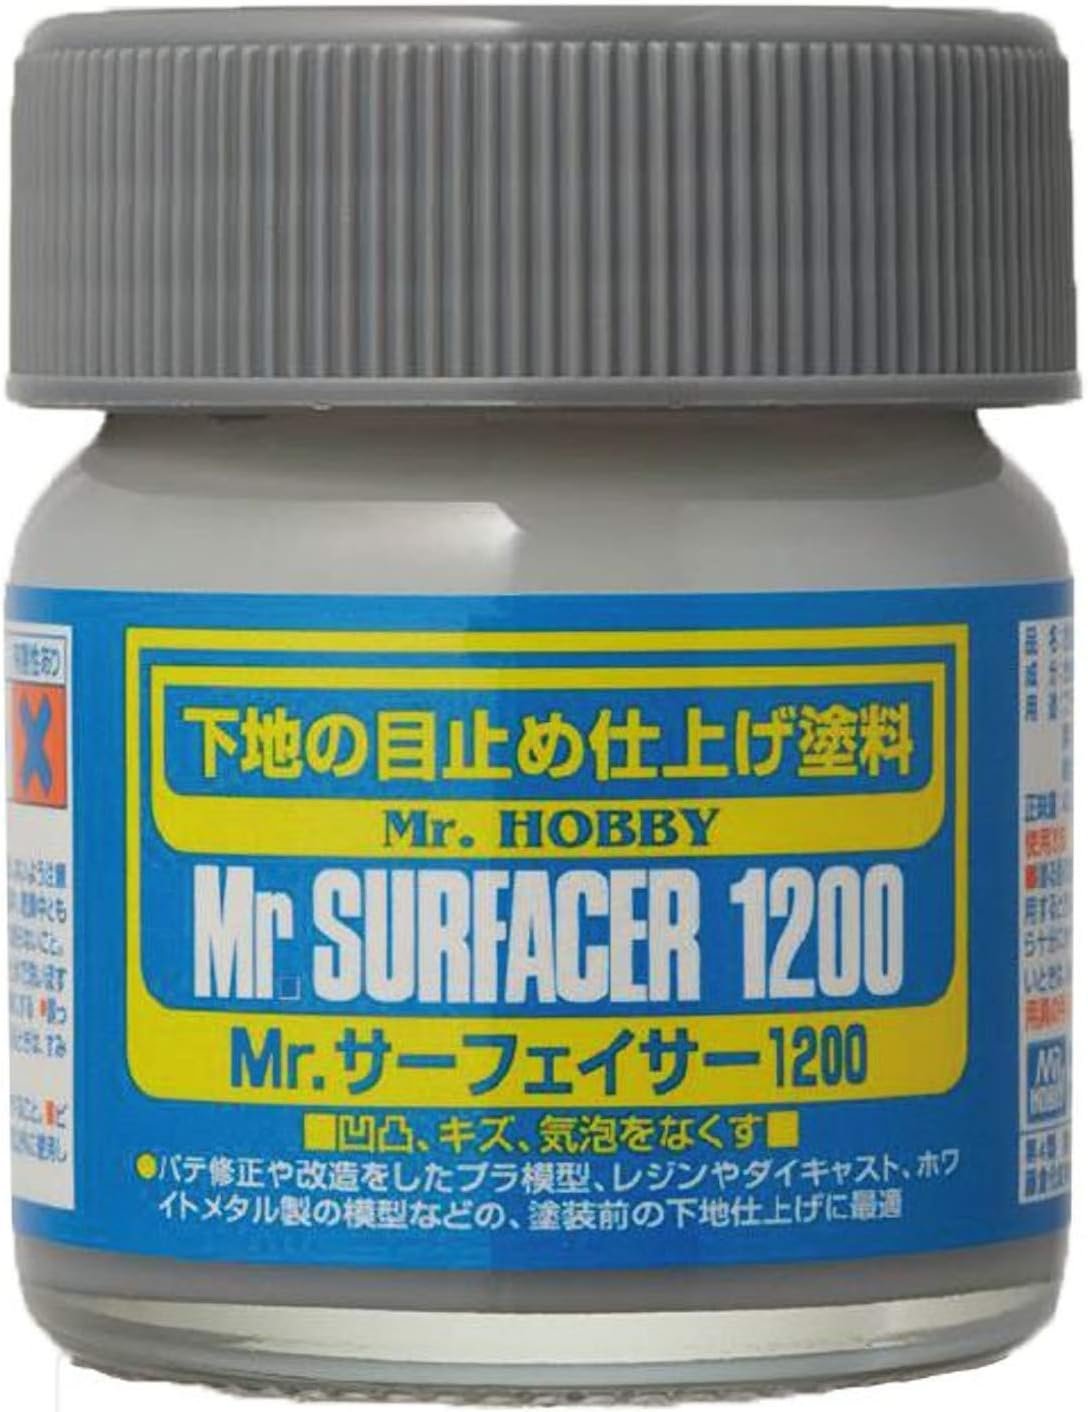 SF286 Mr. Surfacer 1200 Bottle 40ml, GSI